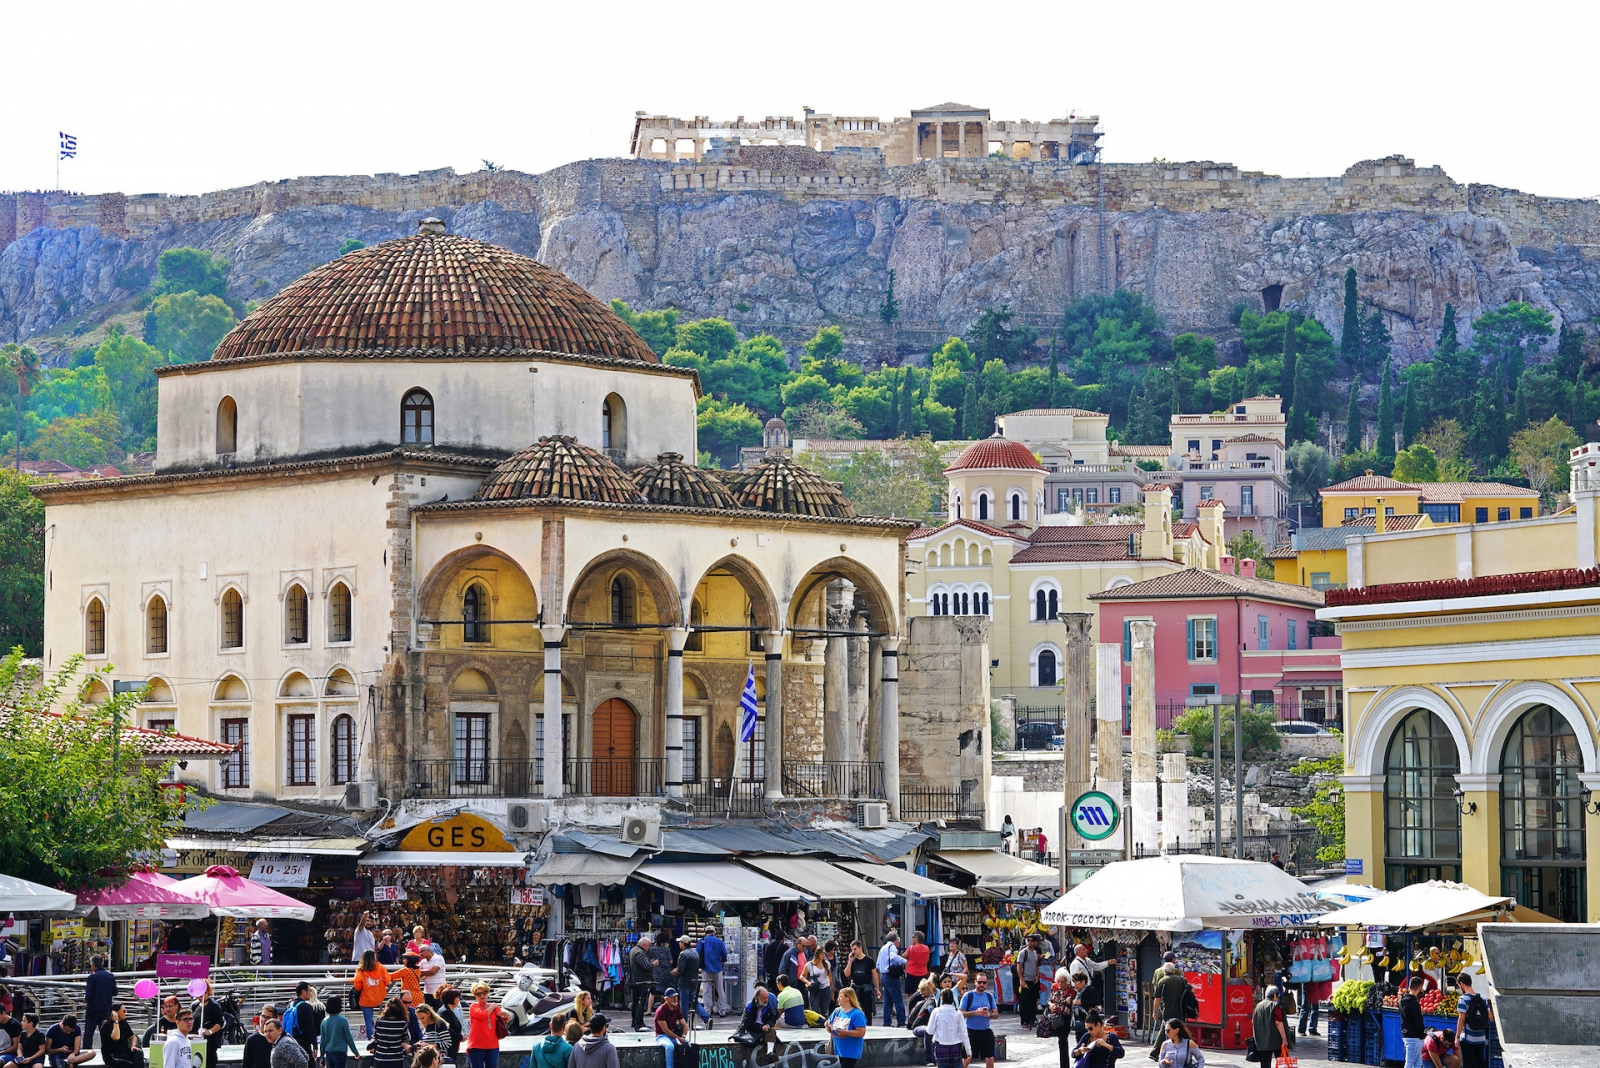 View of Monastiraki with the Parthenon in the background